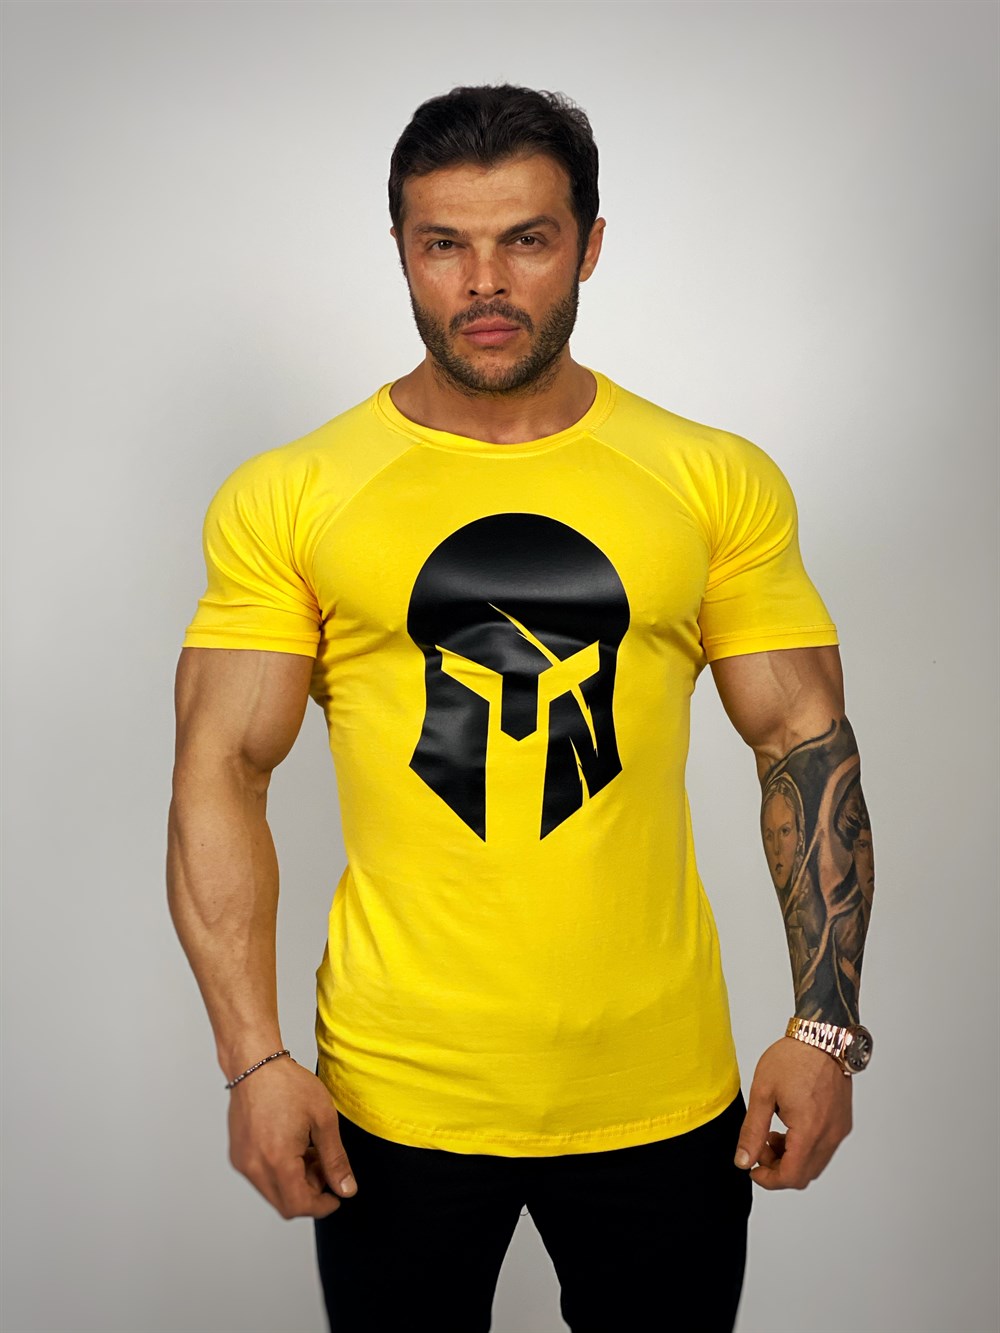 Sparta Fitness T-shirt-Tank Top - Hoddy